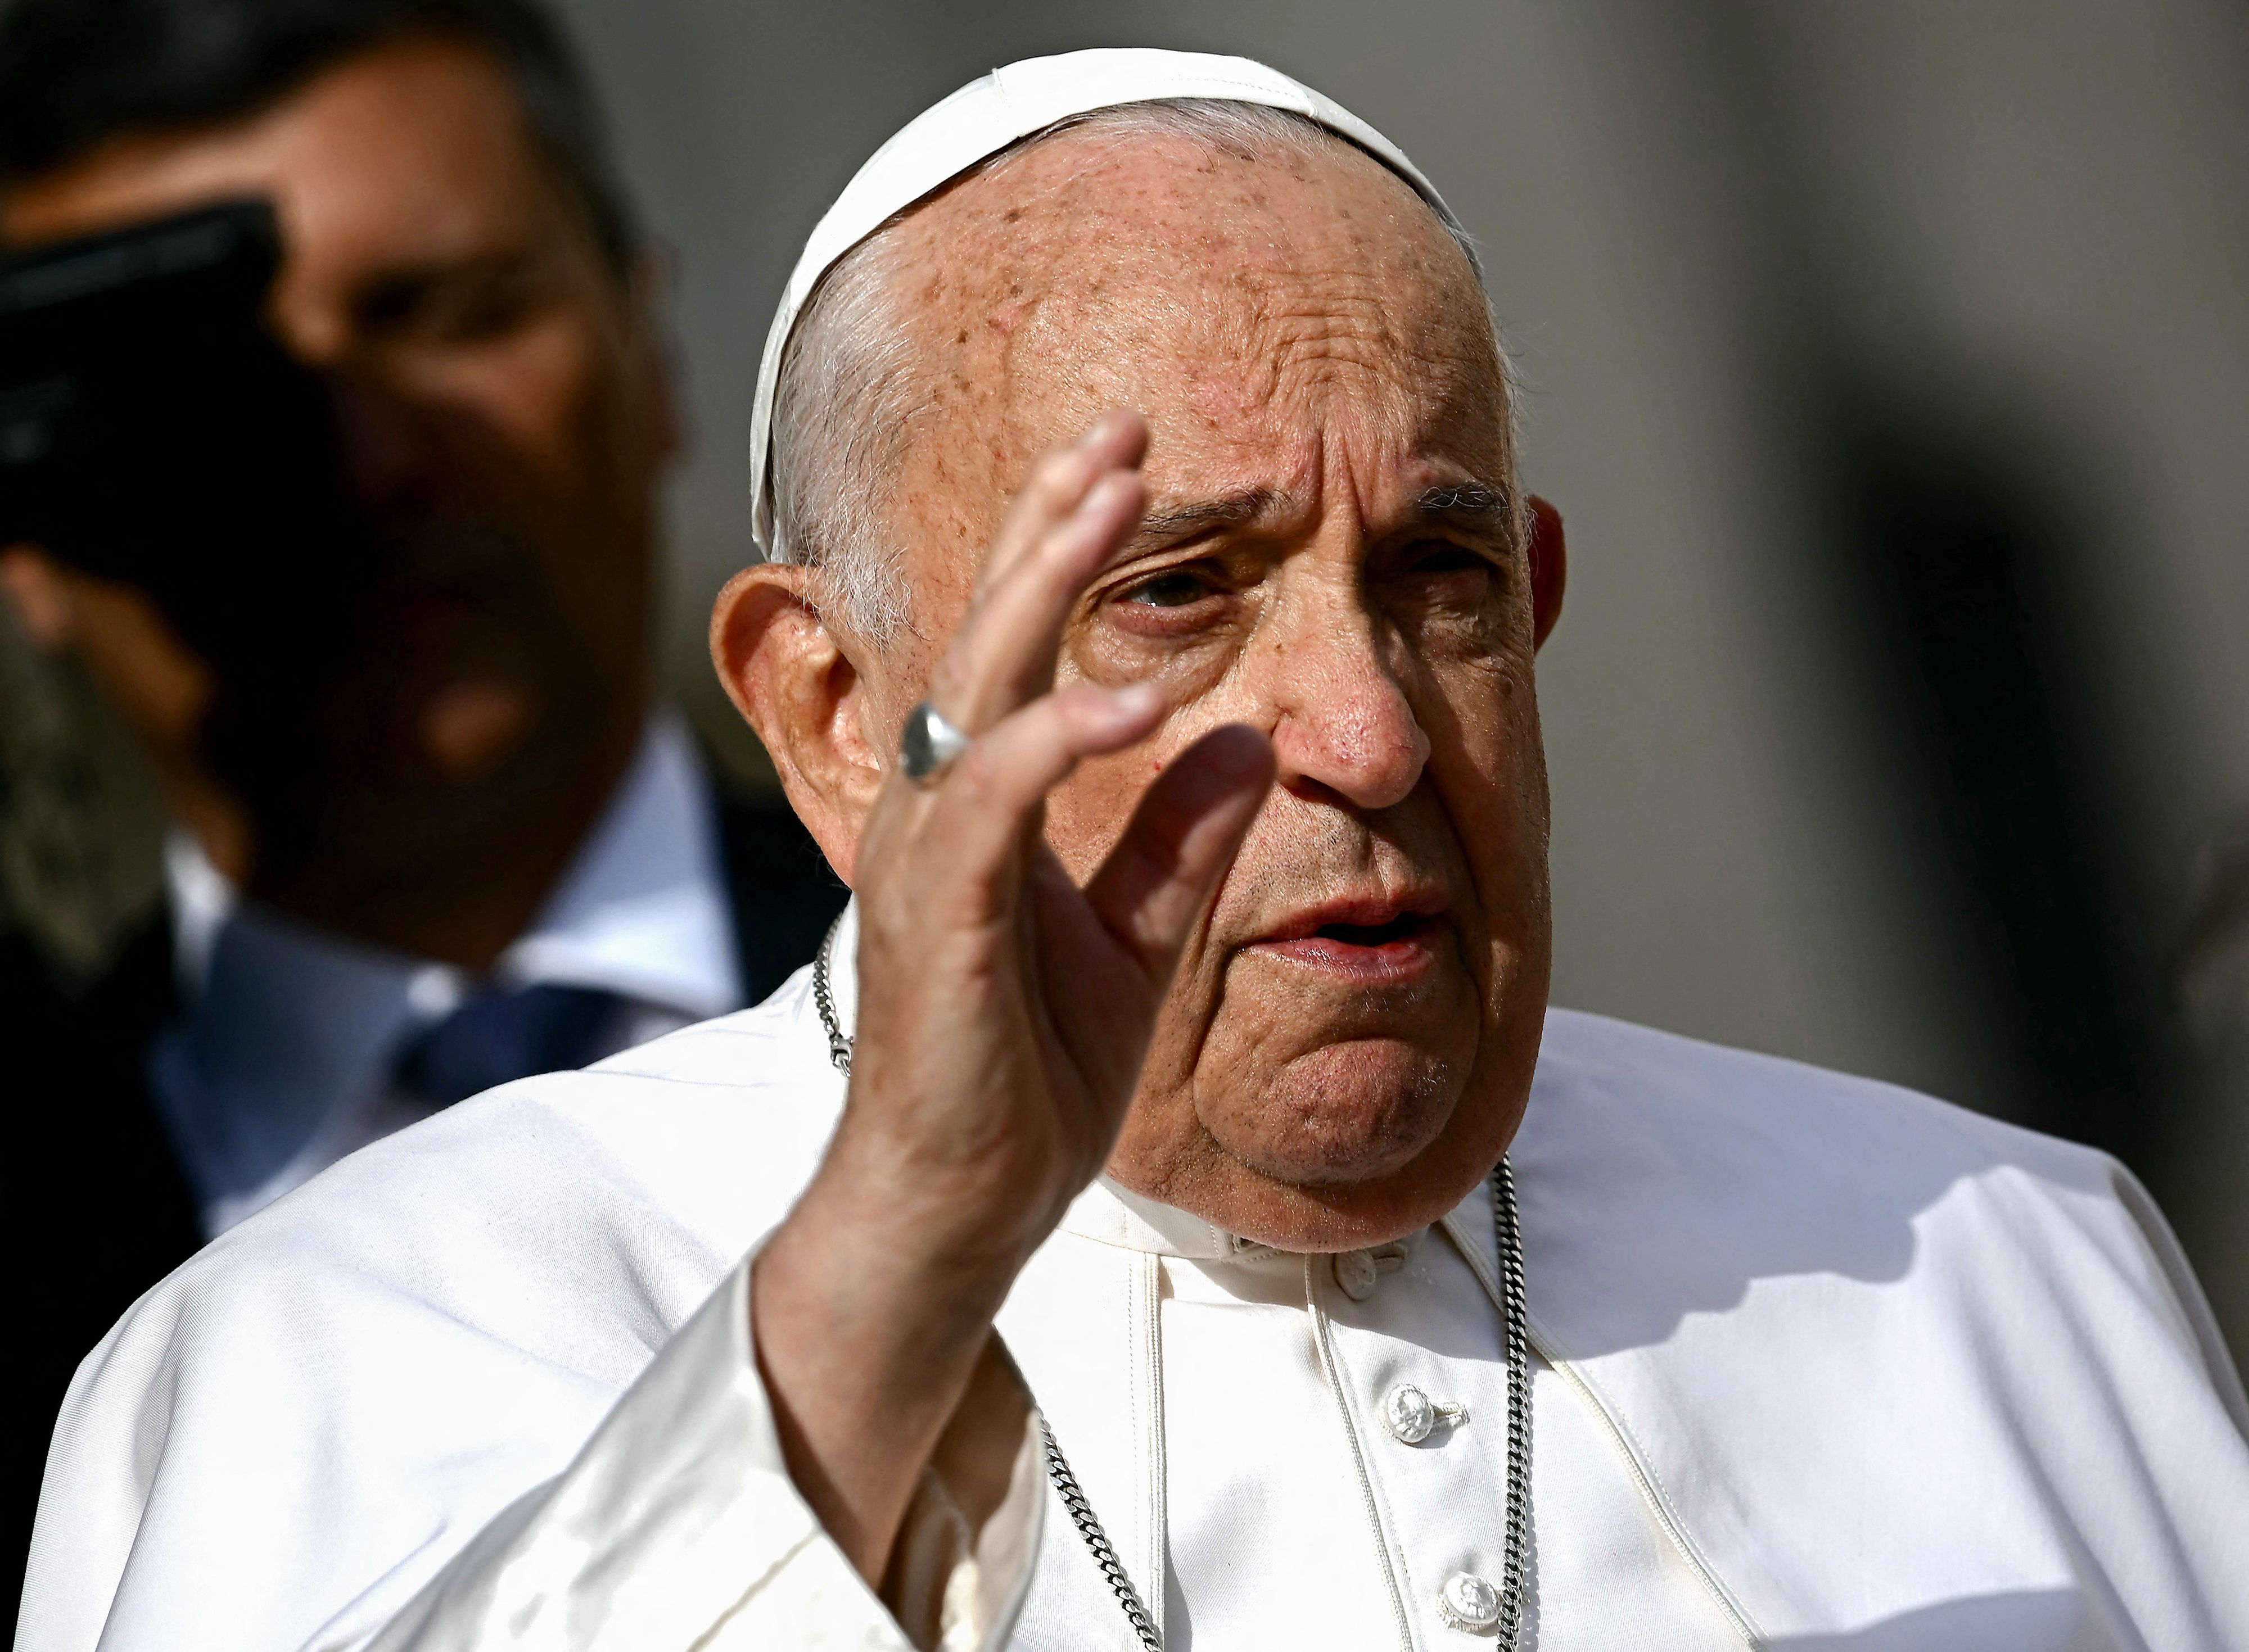 Le pape présente ses excuses pour ses propos jugés homophobes